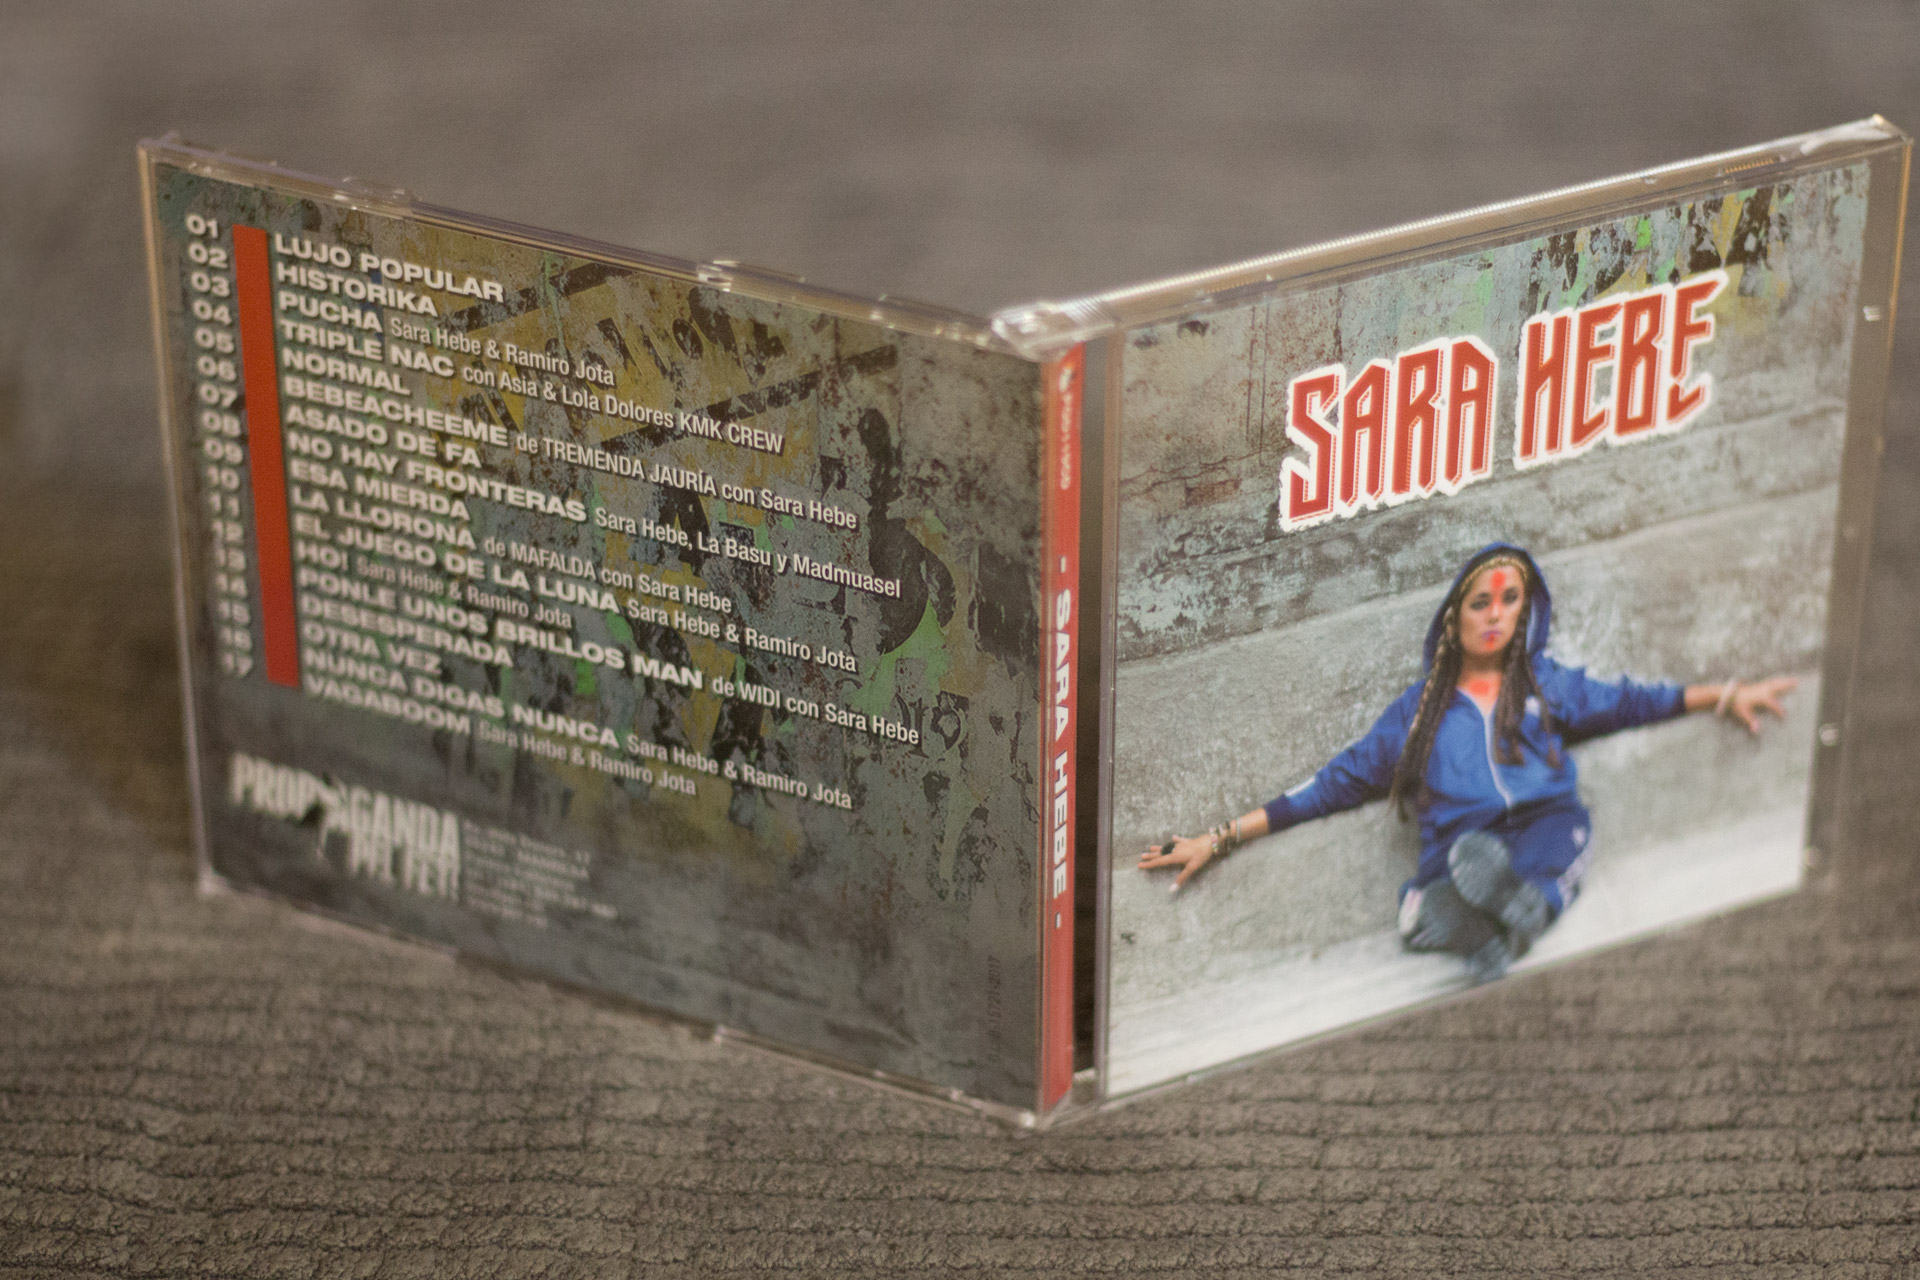 Us presentem el primer disc de Sara Hebe a Europa: ja disponible!